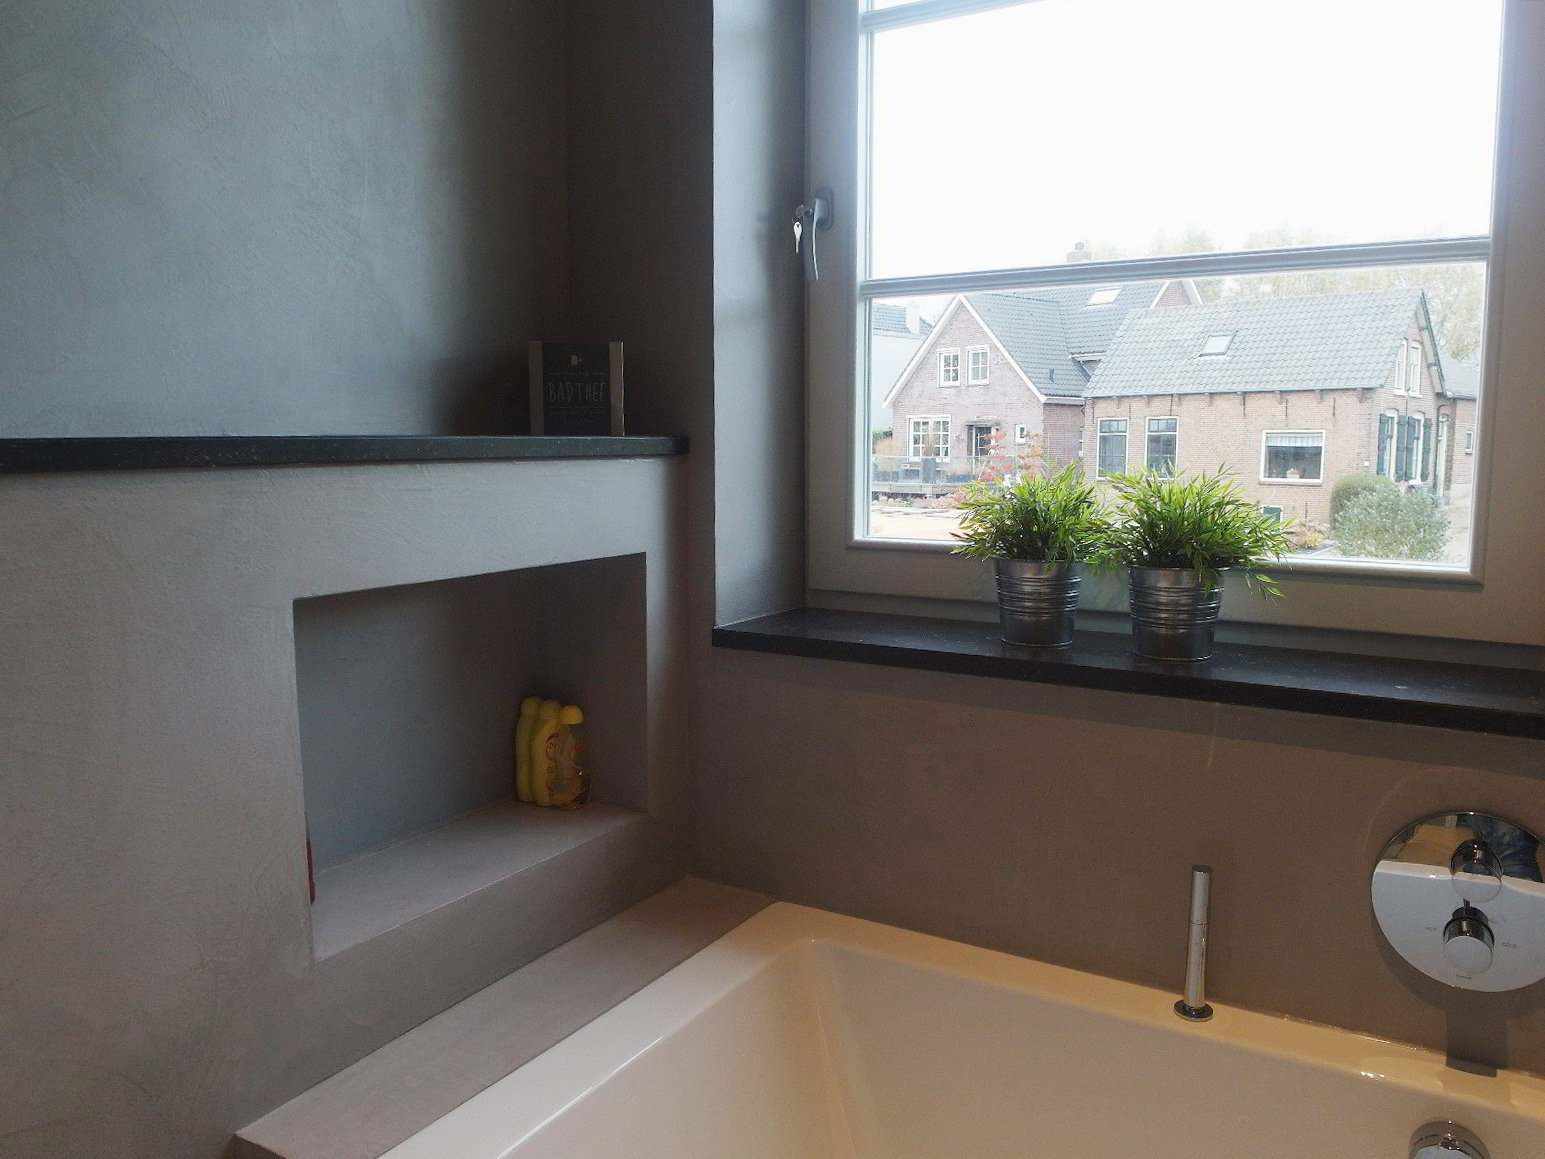 Béton ciré sur le mur, le sol et le meuble d'une salle de bain en Hollande dans le projet Decas.